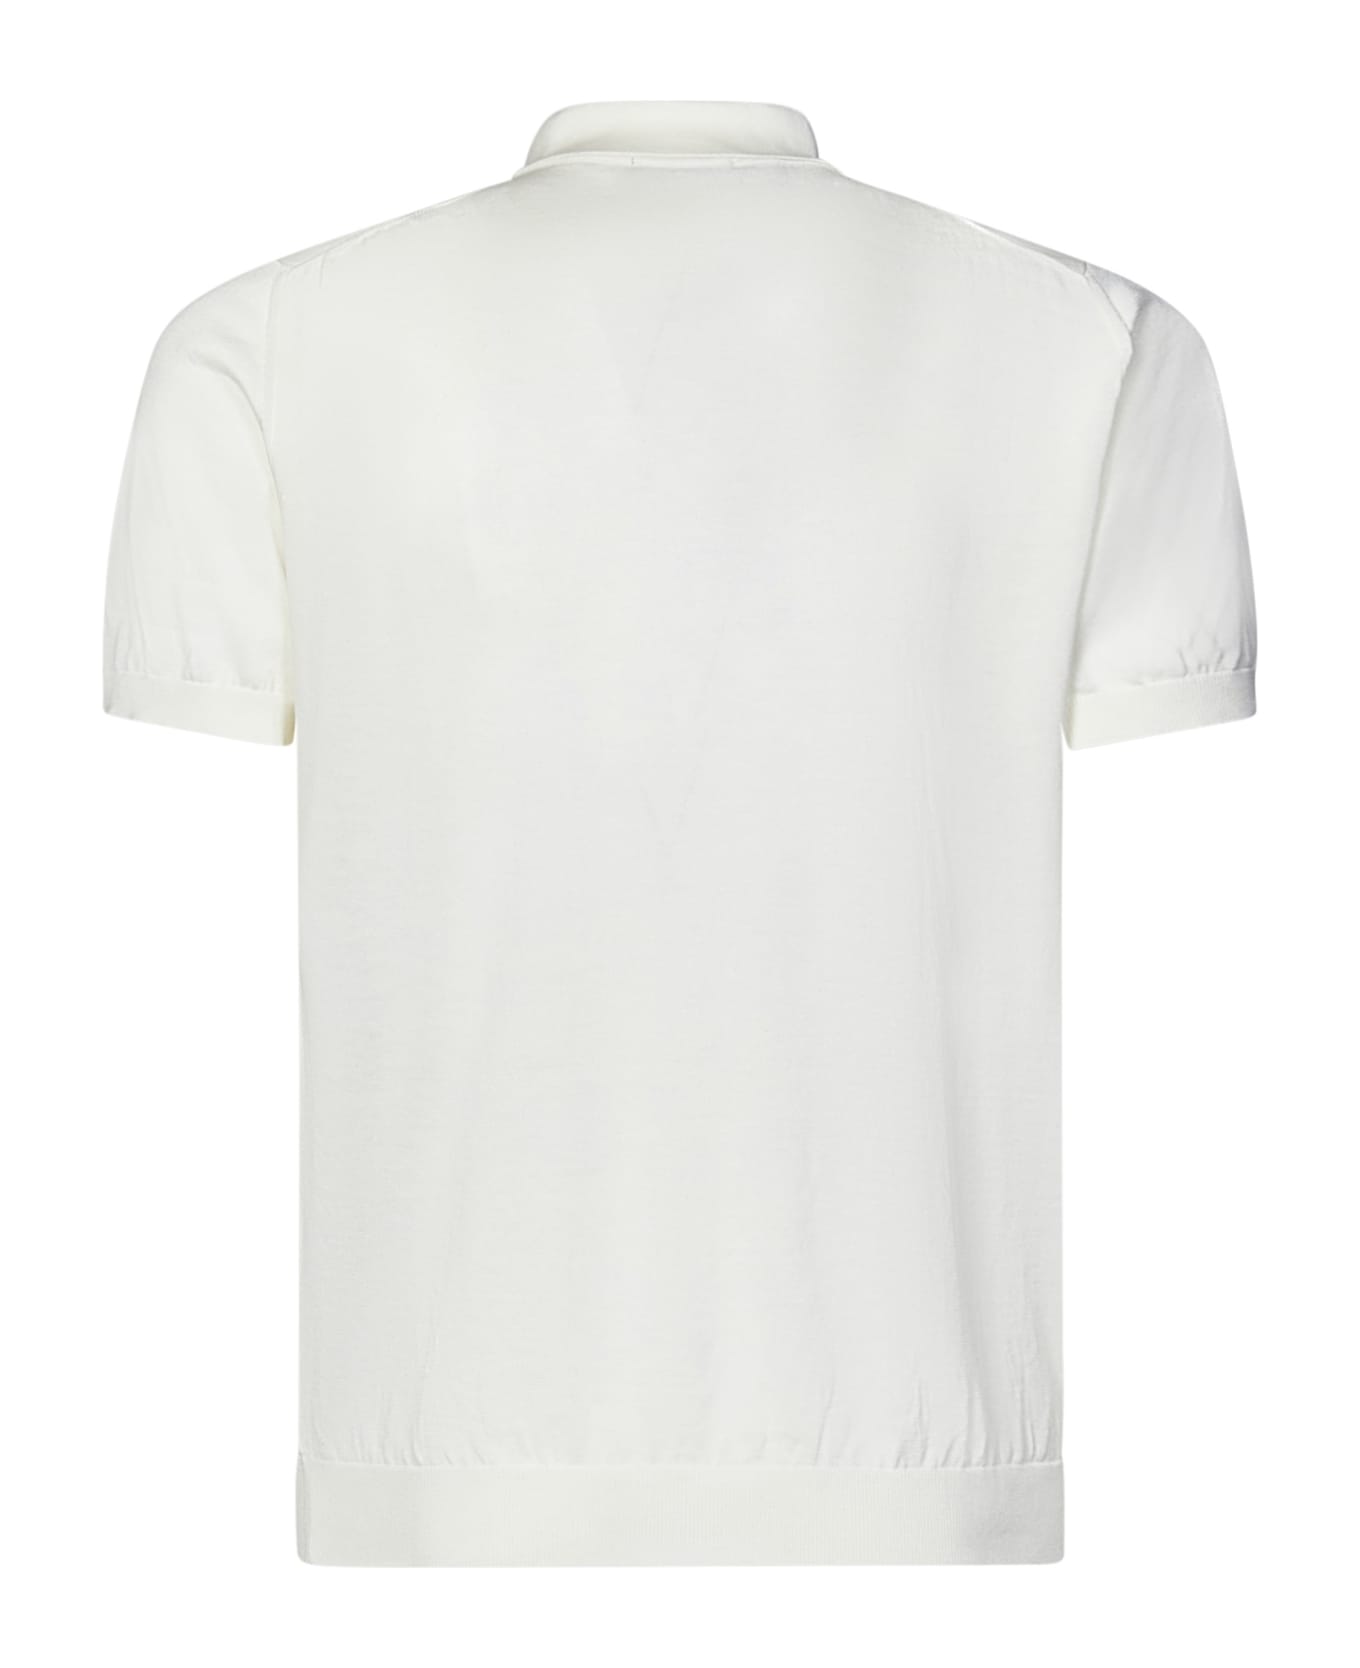 Drumohr Polo Shirt - White